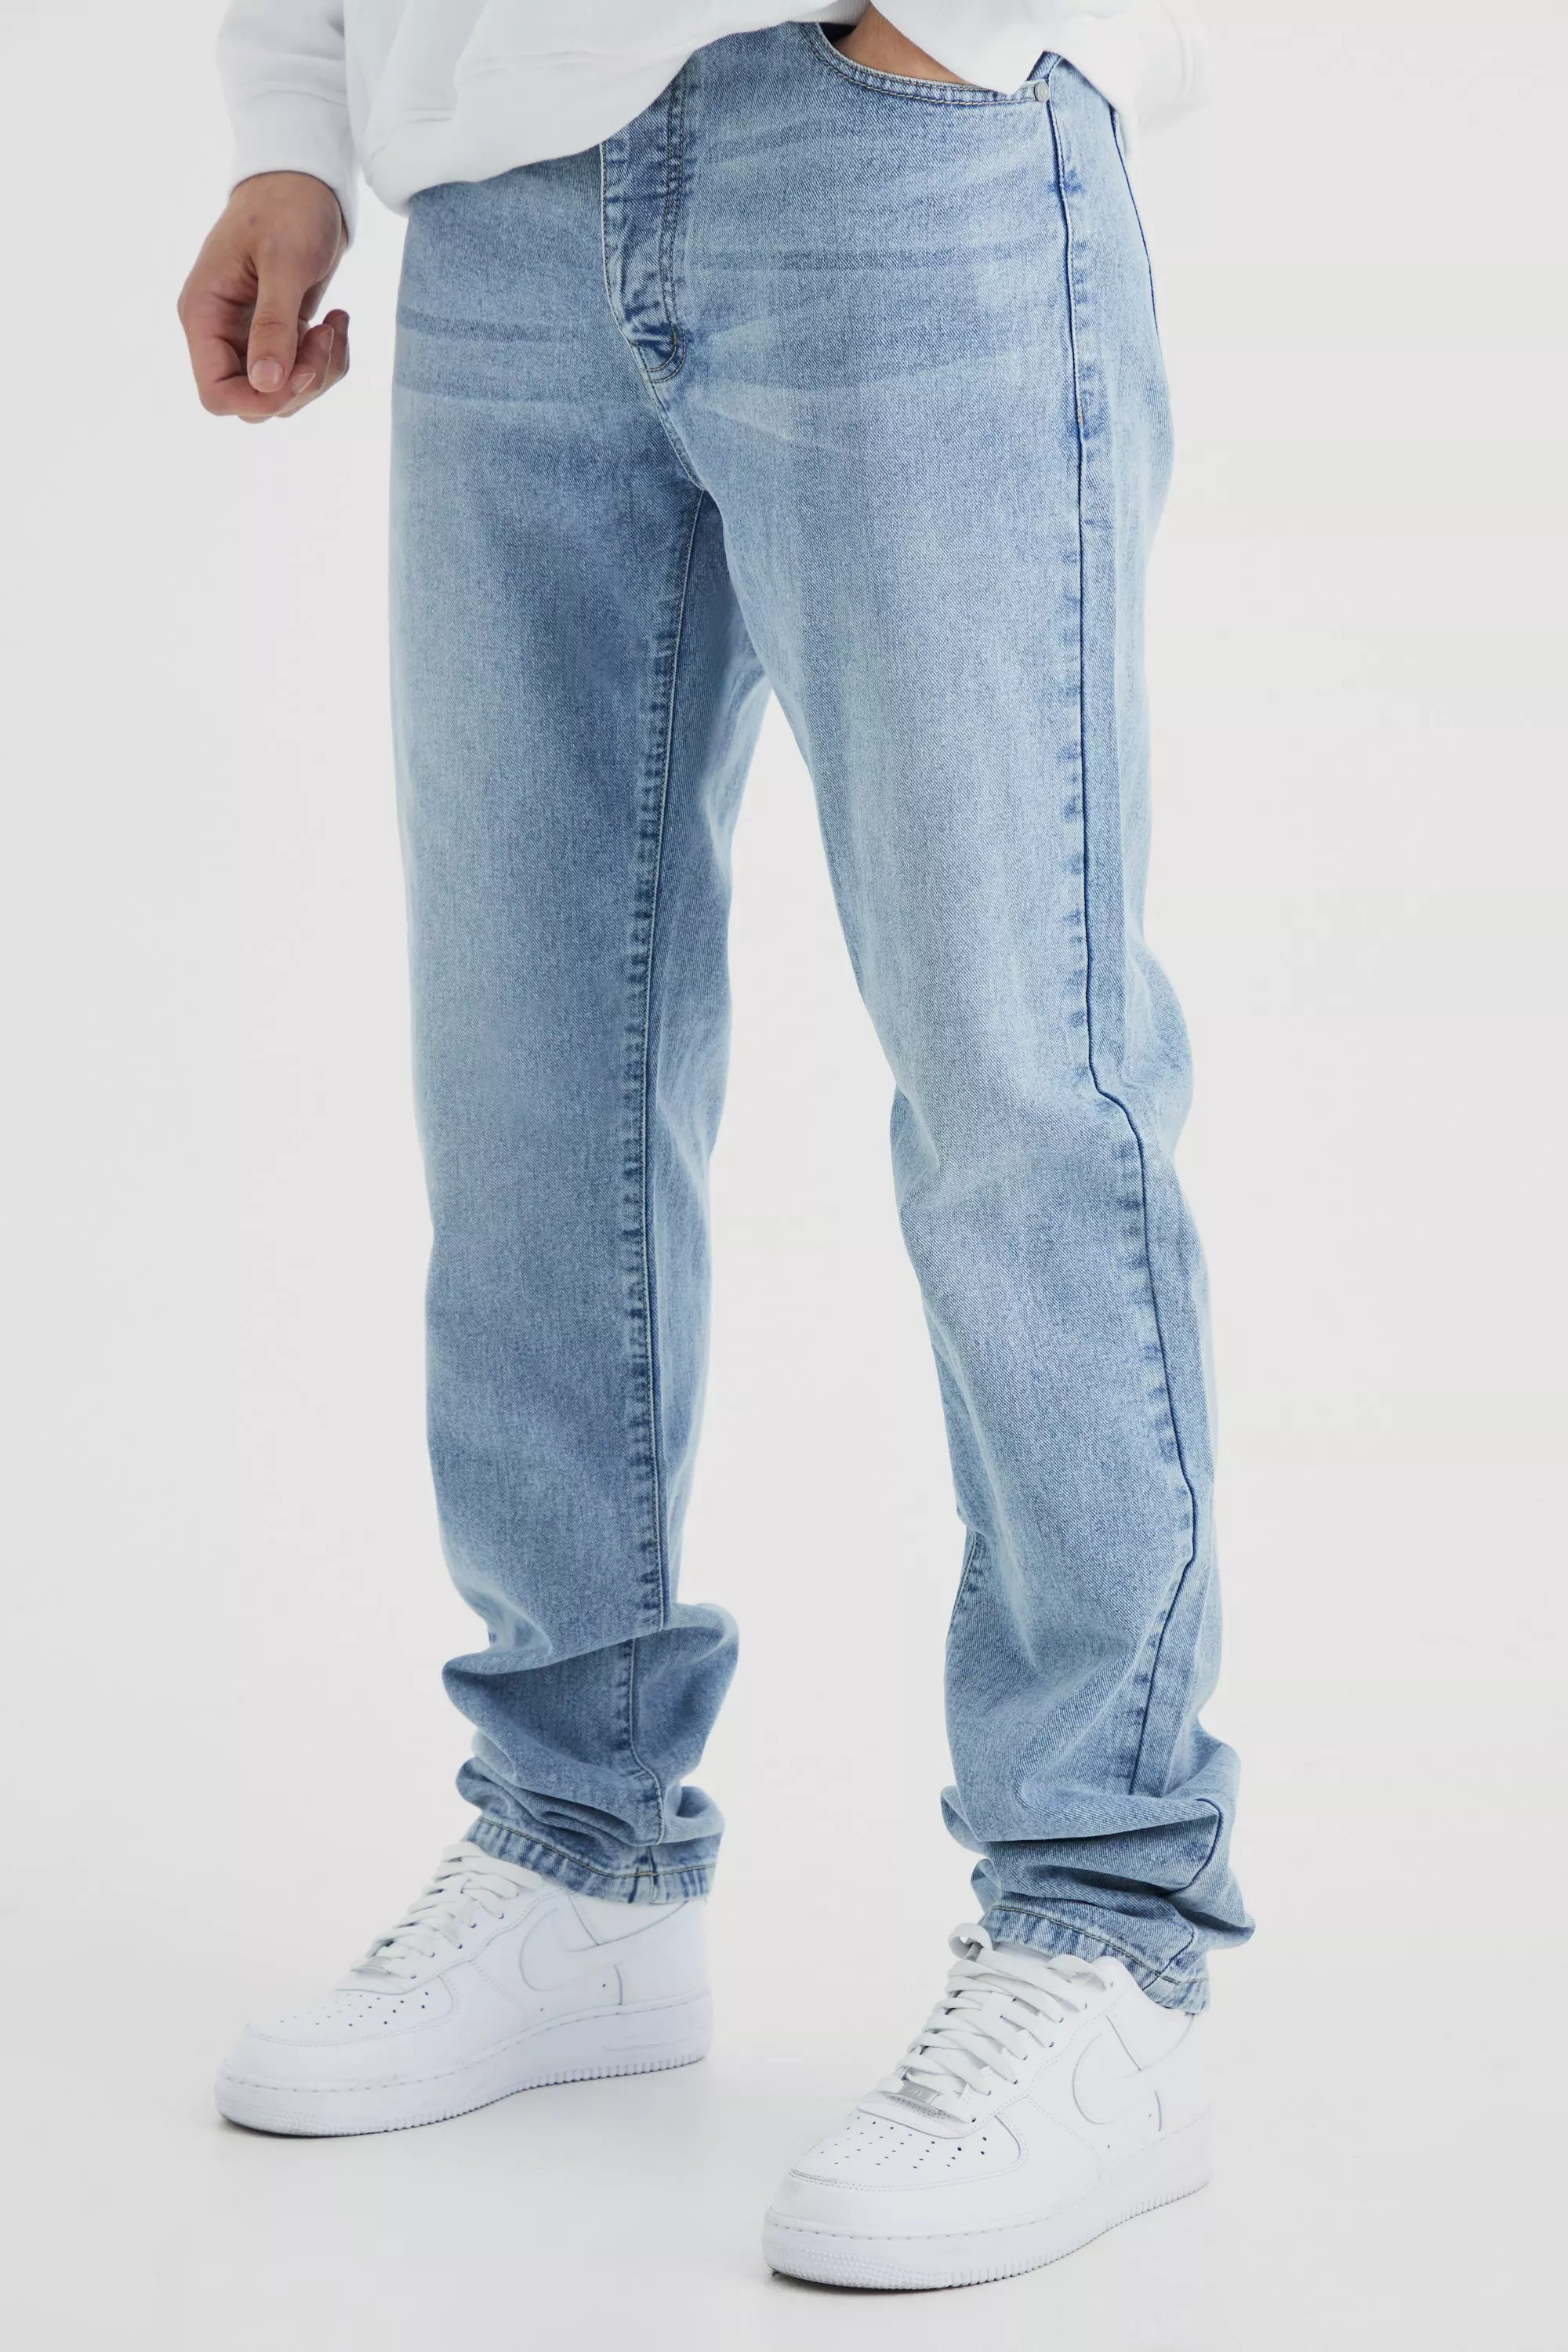 Men's Light Blue Jeans, Jeans For Men